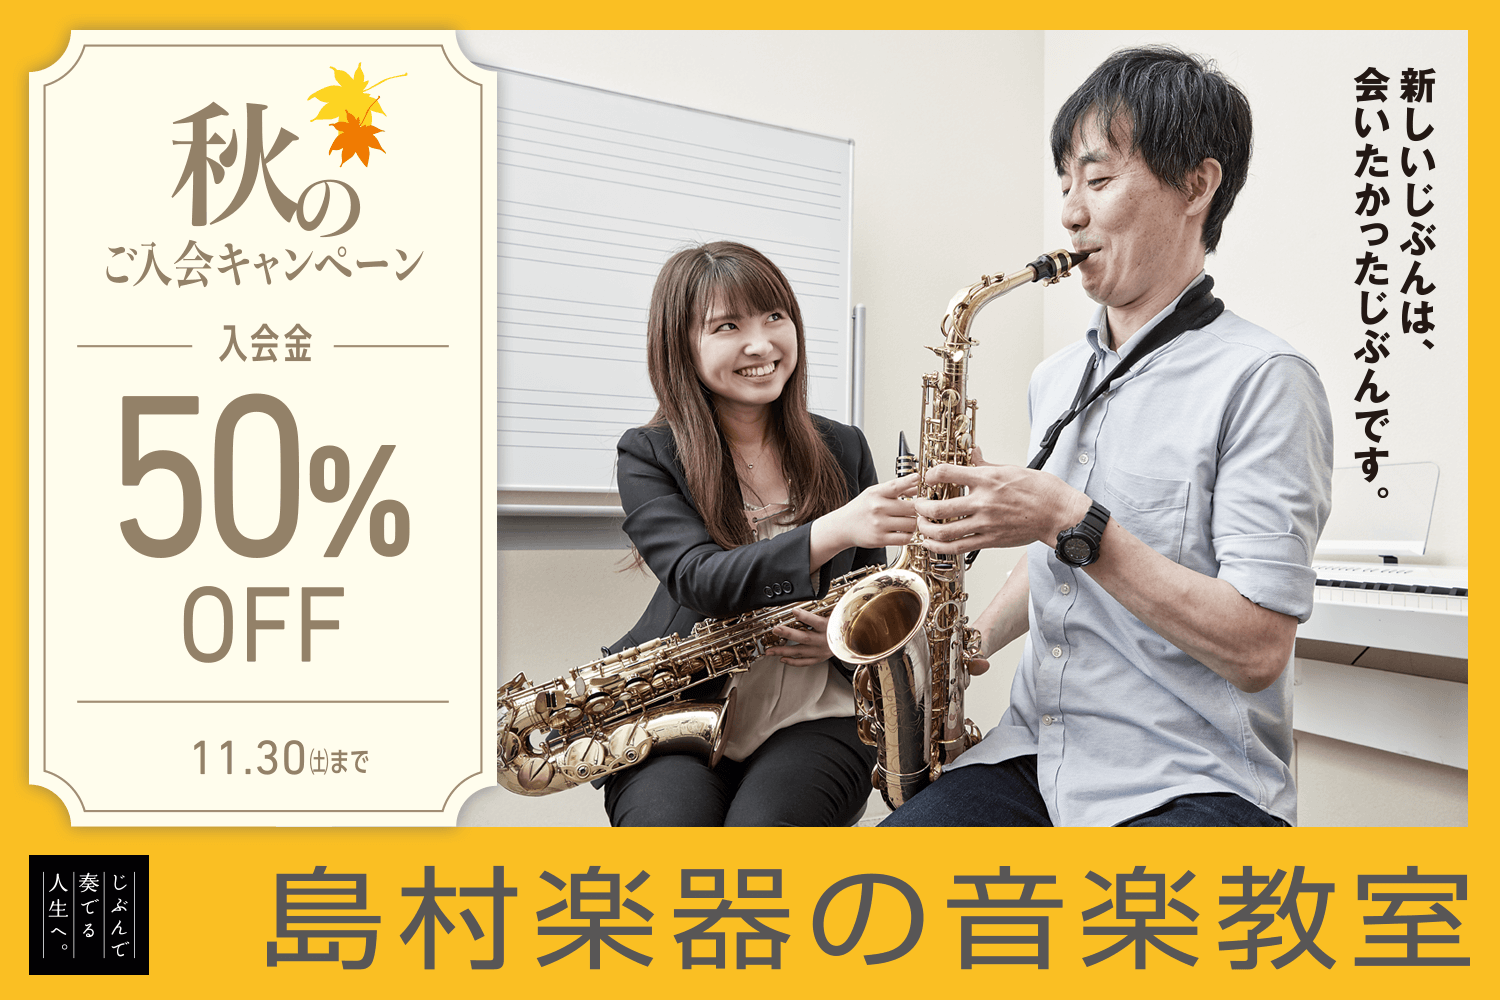 【音楽教室】入会金50%OFF!! 秋のご入会キャンペーン実施中!!